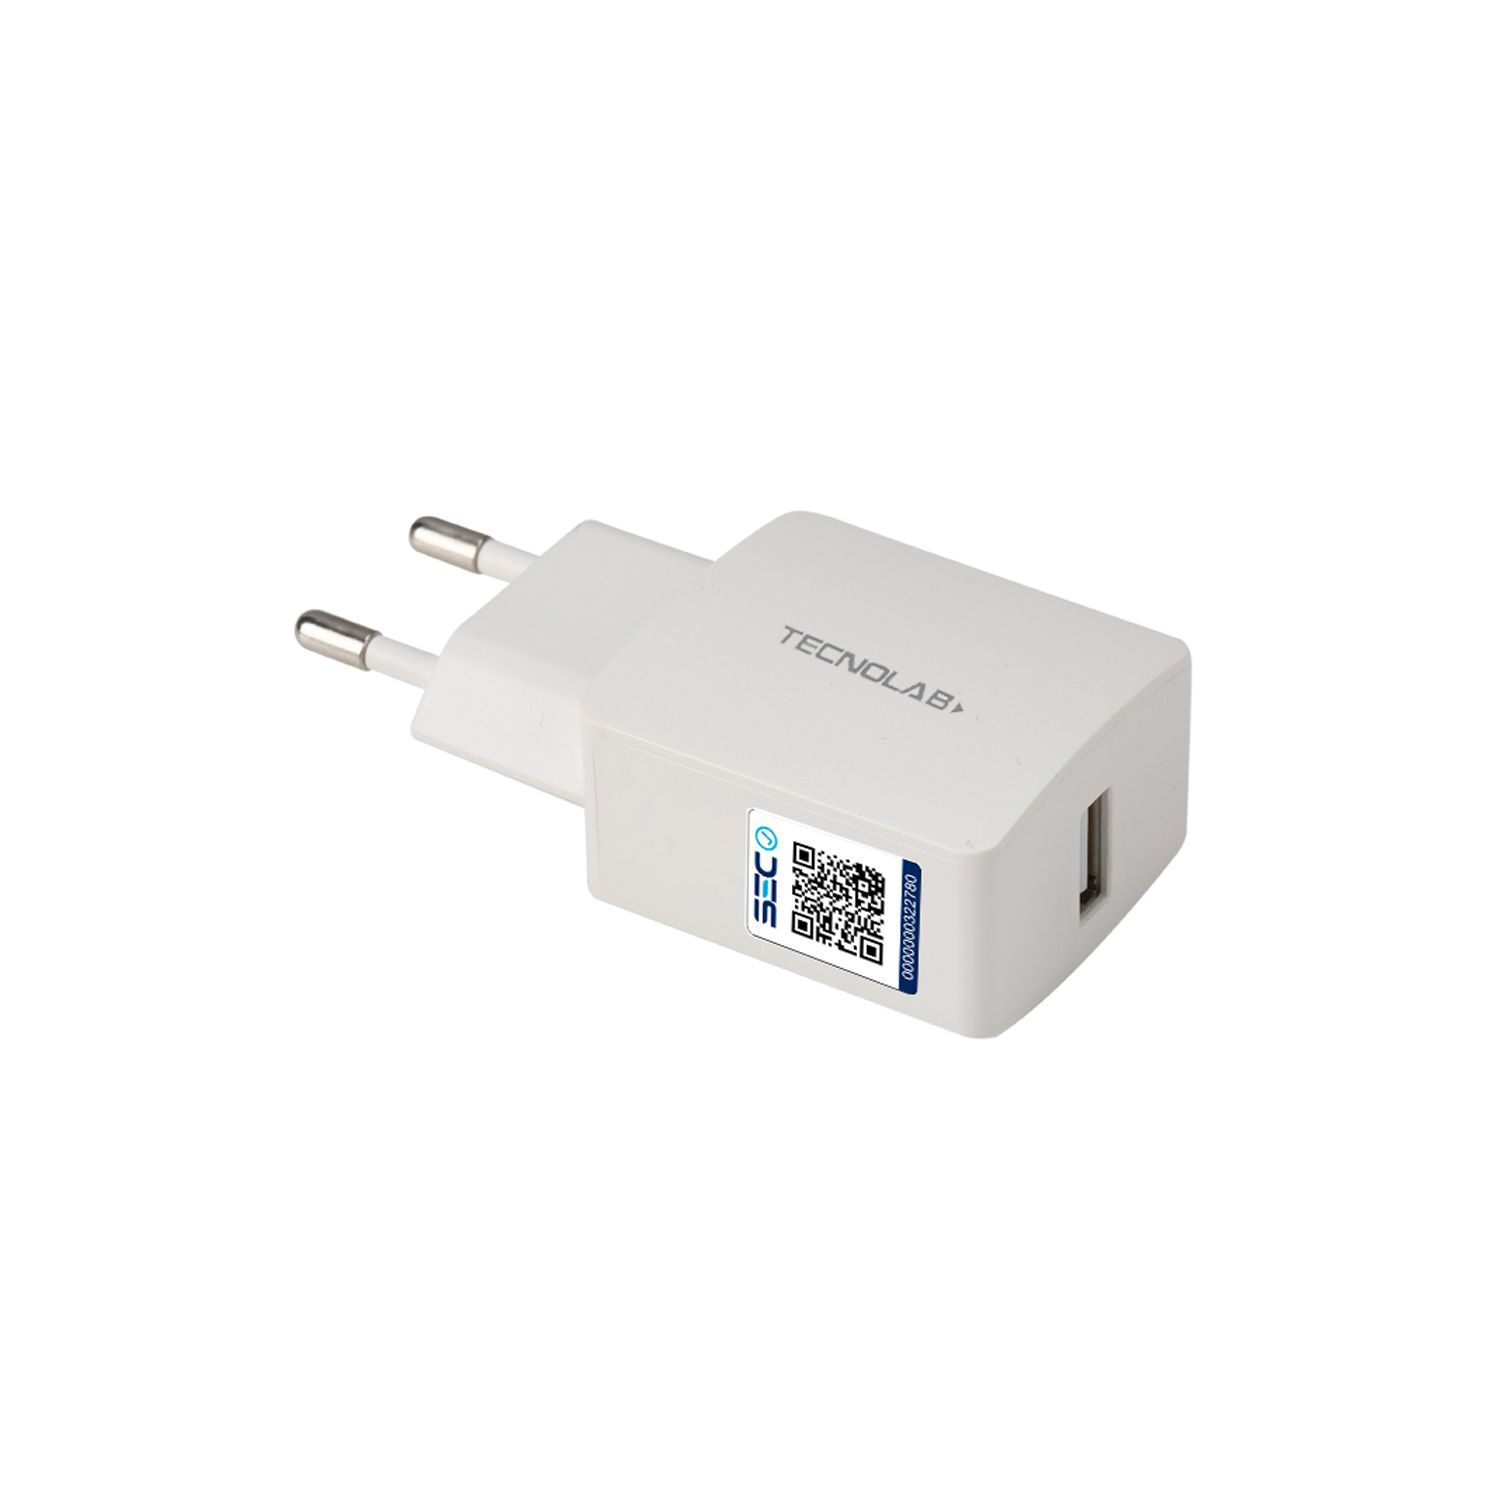 Cargador Doble USB Carga Rápida 2.4A + Cable USB-C Tecnolab®